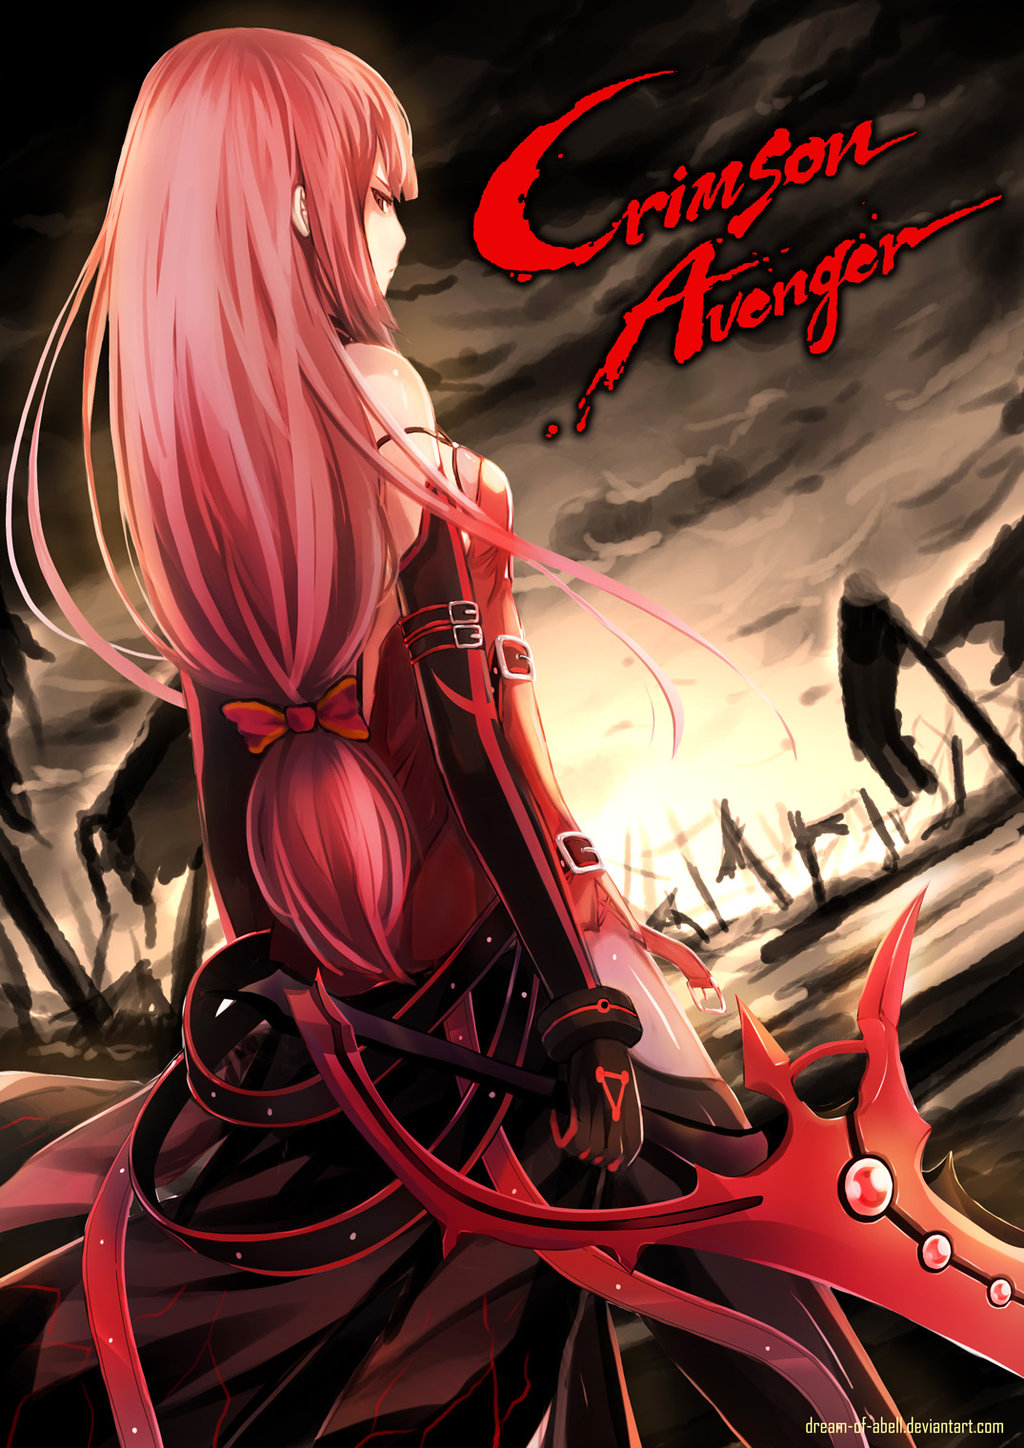 Crimson Avenger #6